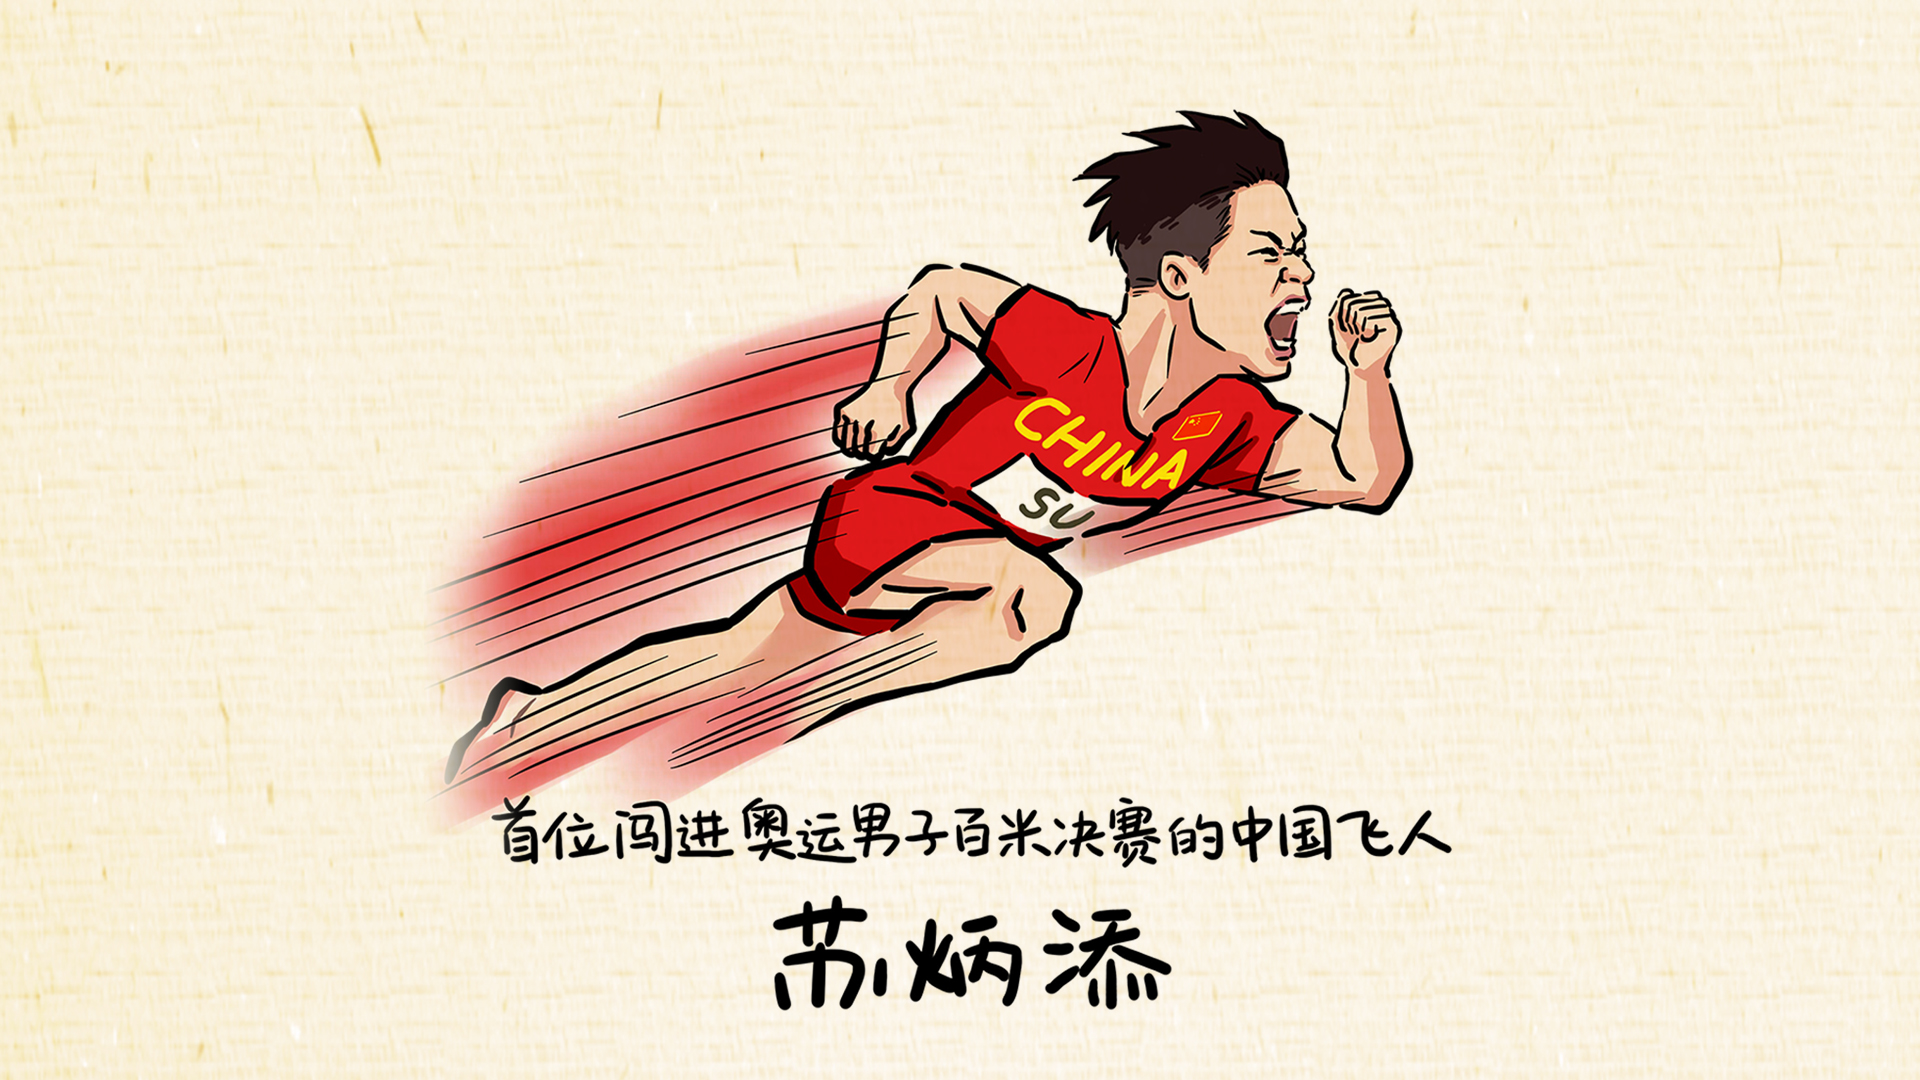 漫画奥运⑩丨一飞冲“添”，中国速度！不是只有夺得金牌才值得庆贺